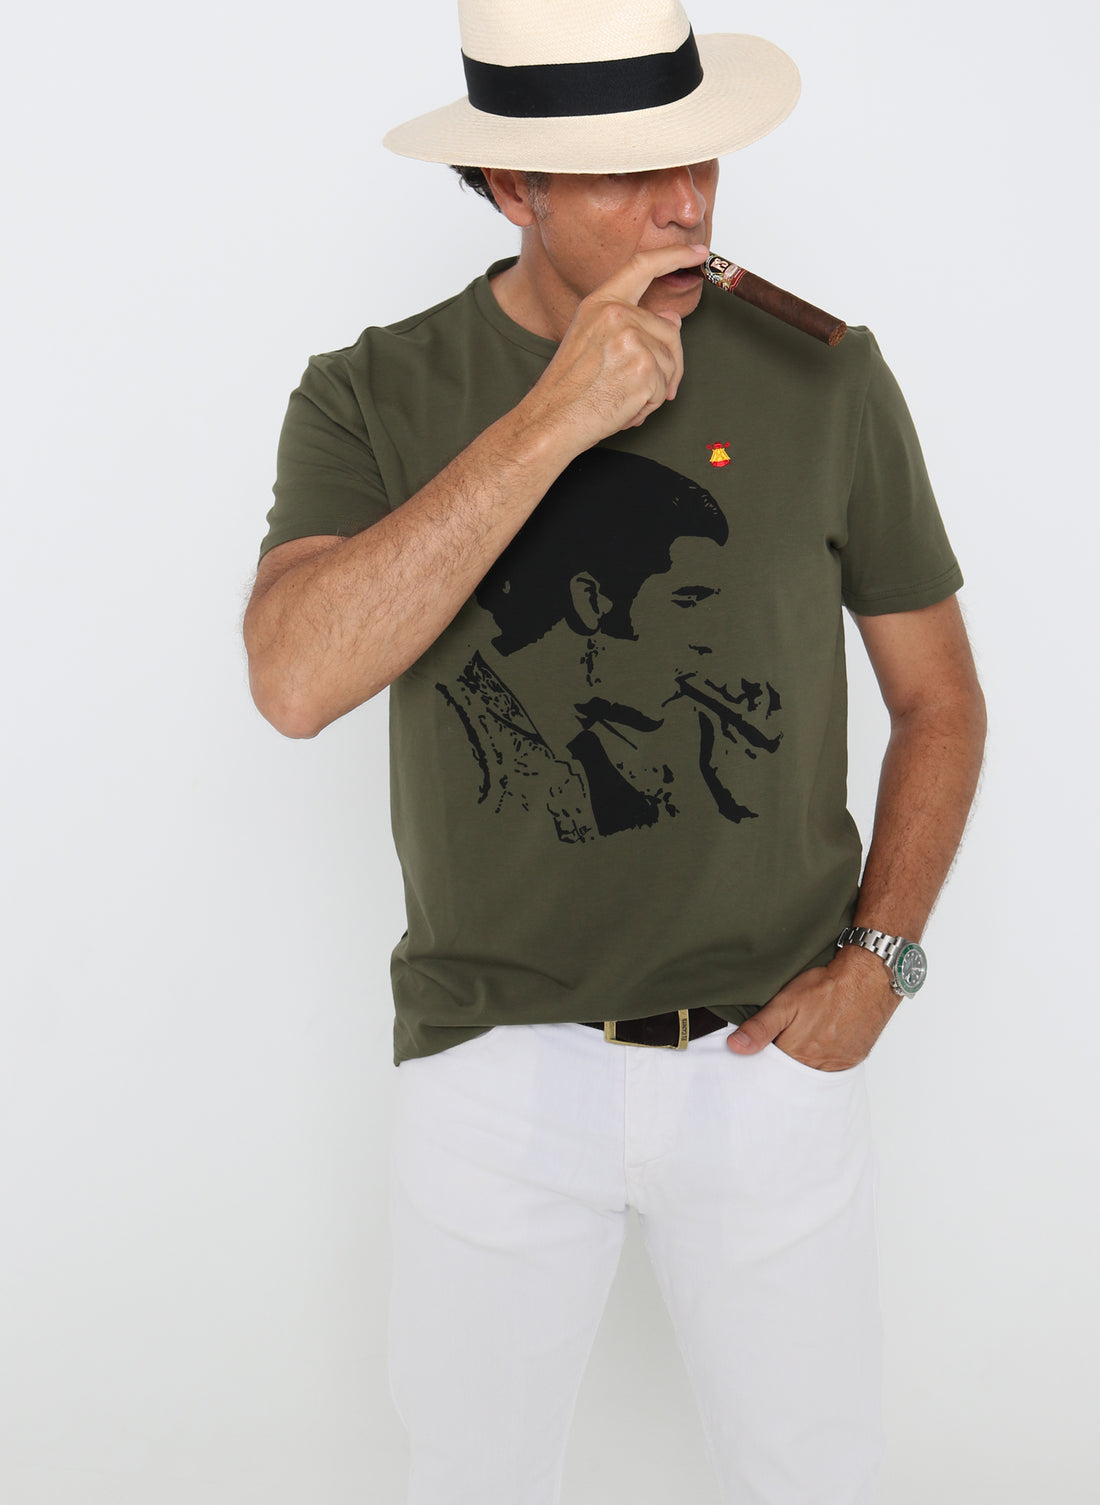 T-shirt Homme Vert Kaki Morante